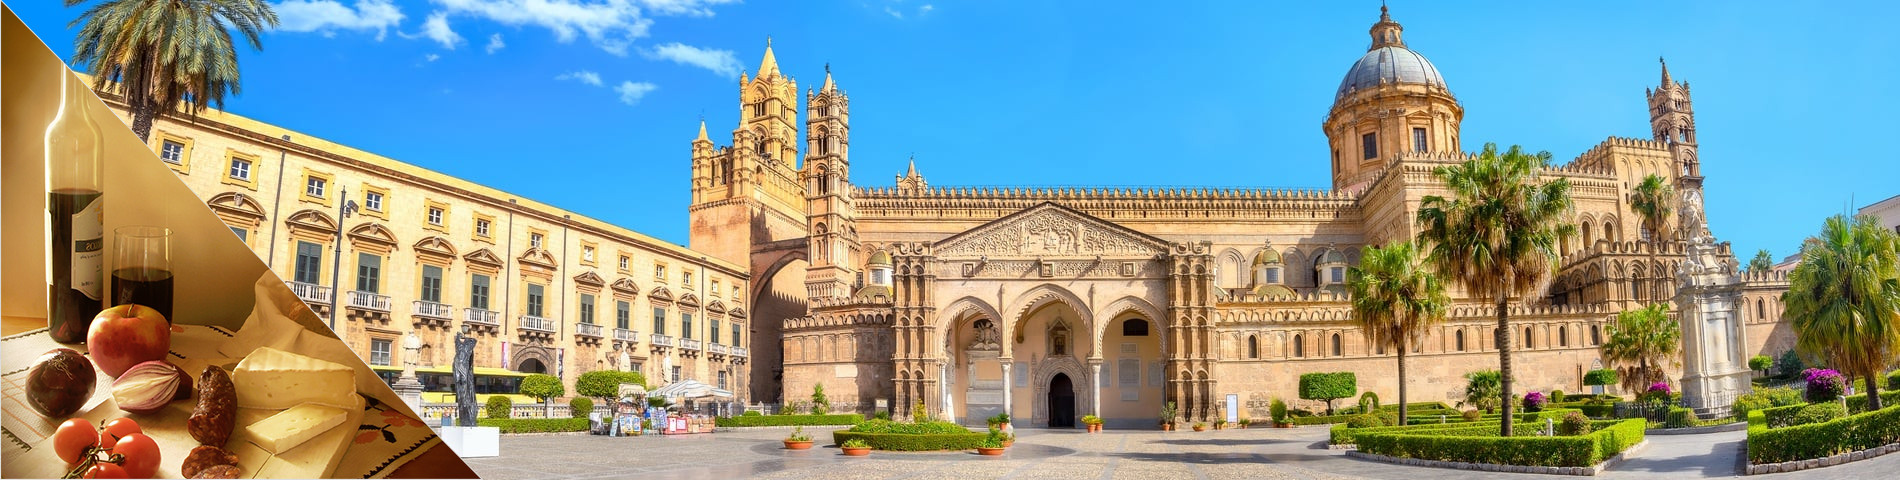 Palermo - Italien & Culture